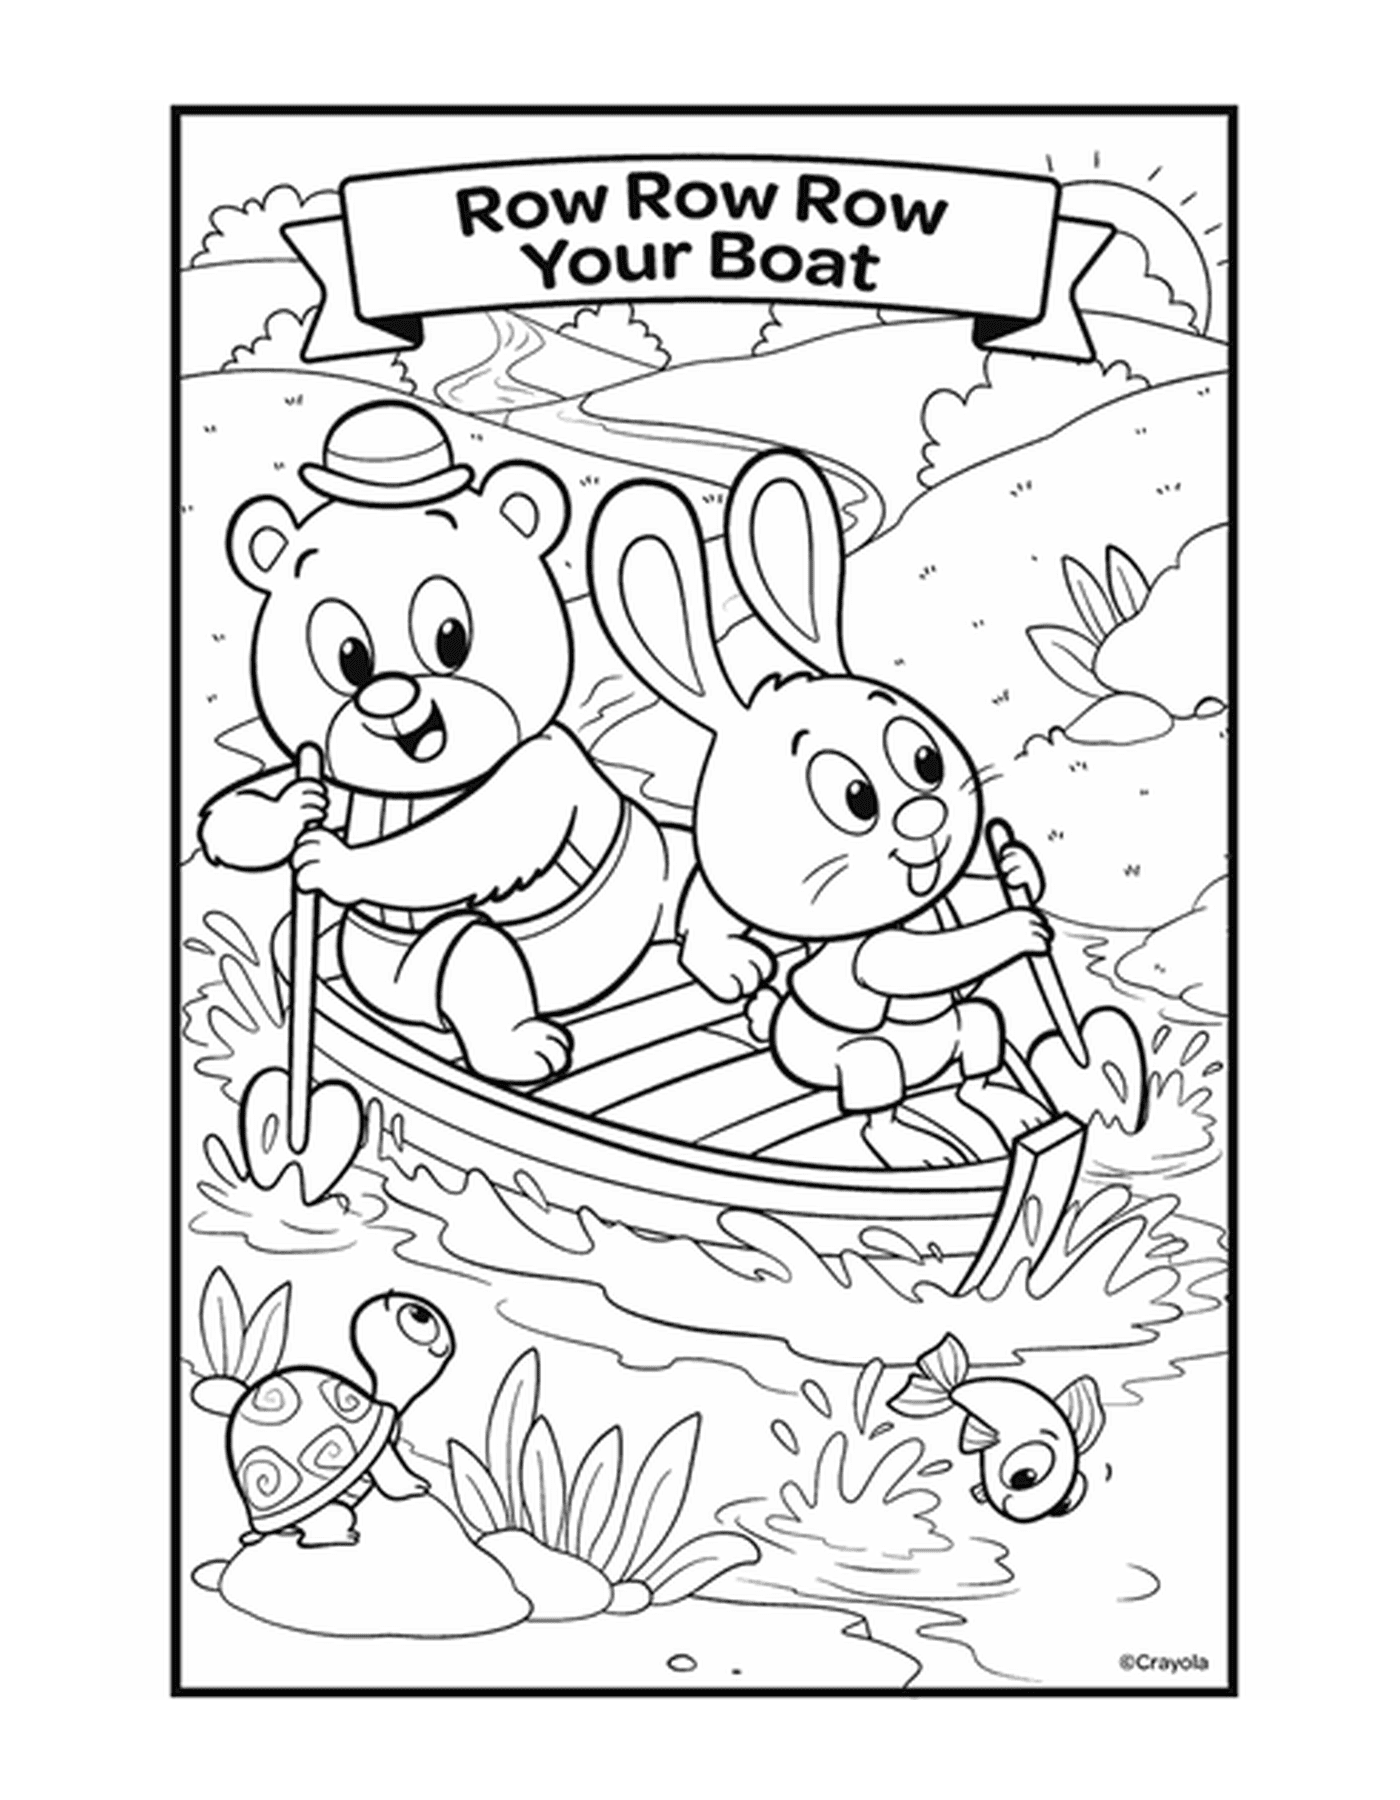  Die Figur Reihe, Reihe, Reihe Ihr Boot mit zwei Tieren in einem Boot auf dem Wasser 